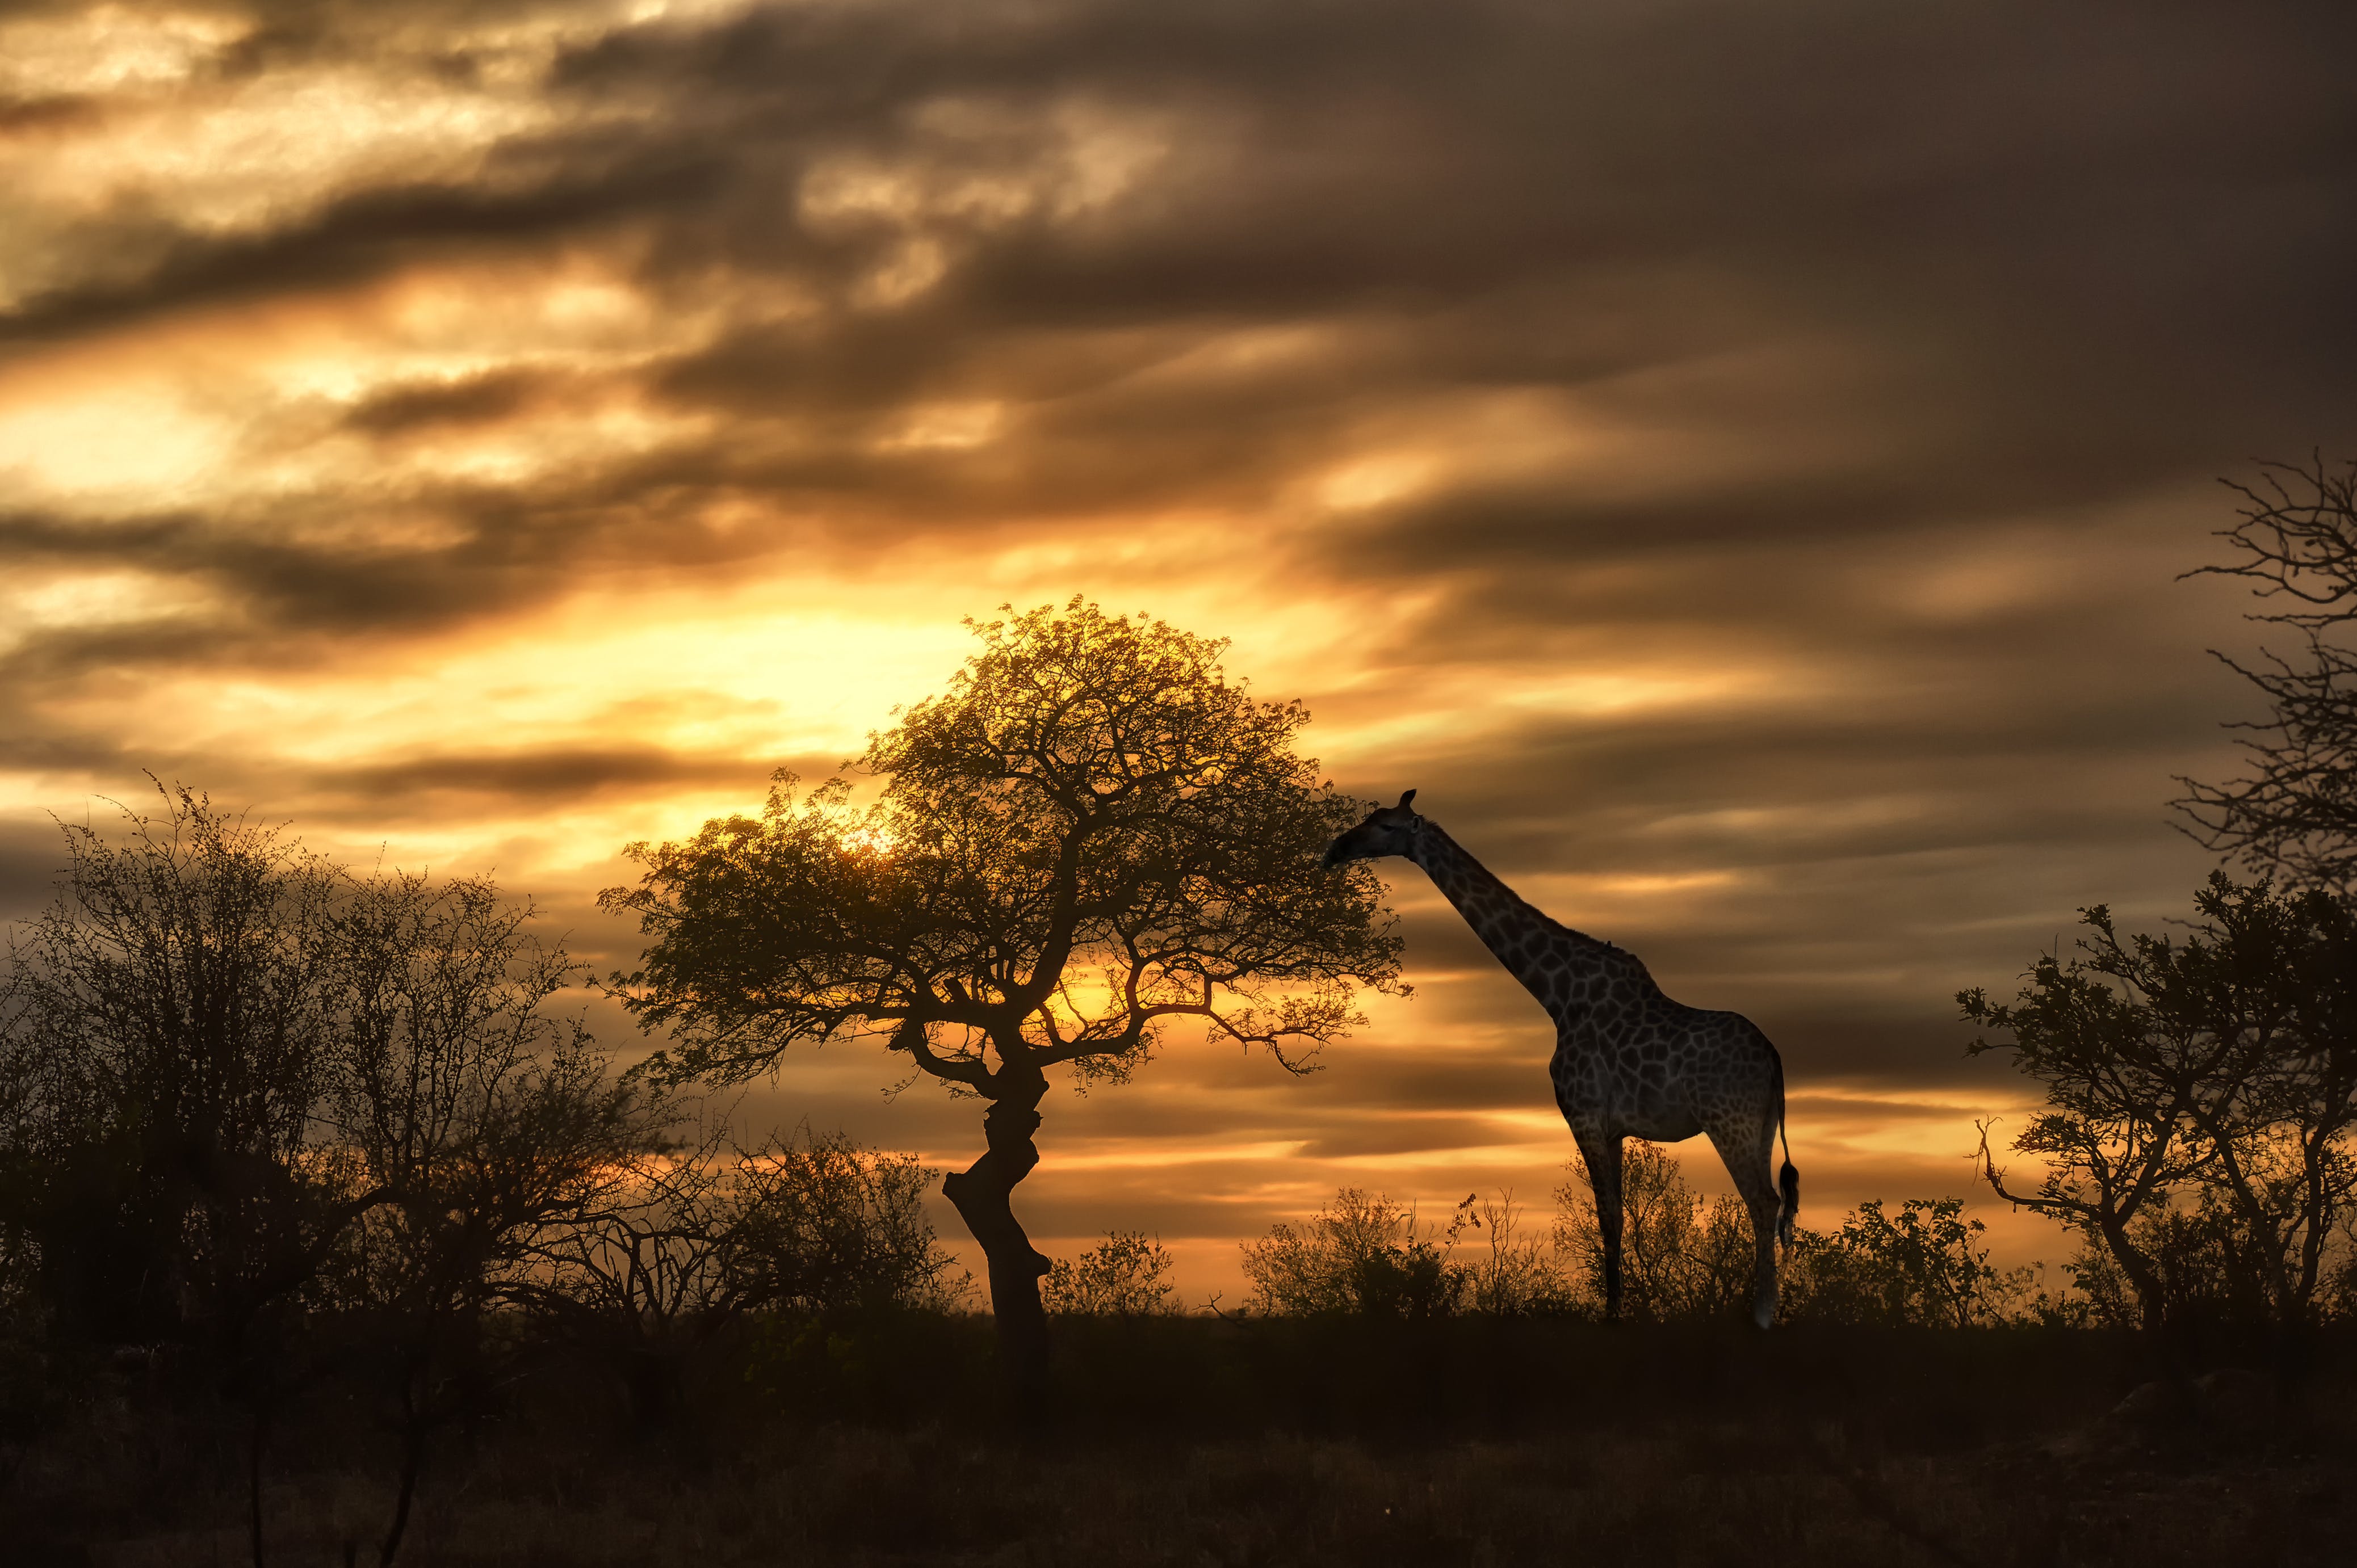 Giraffe at sunset during a safari